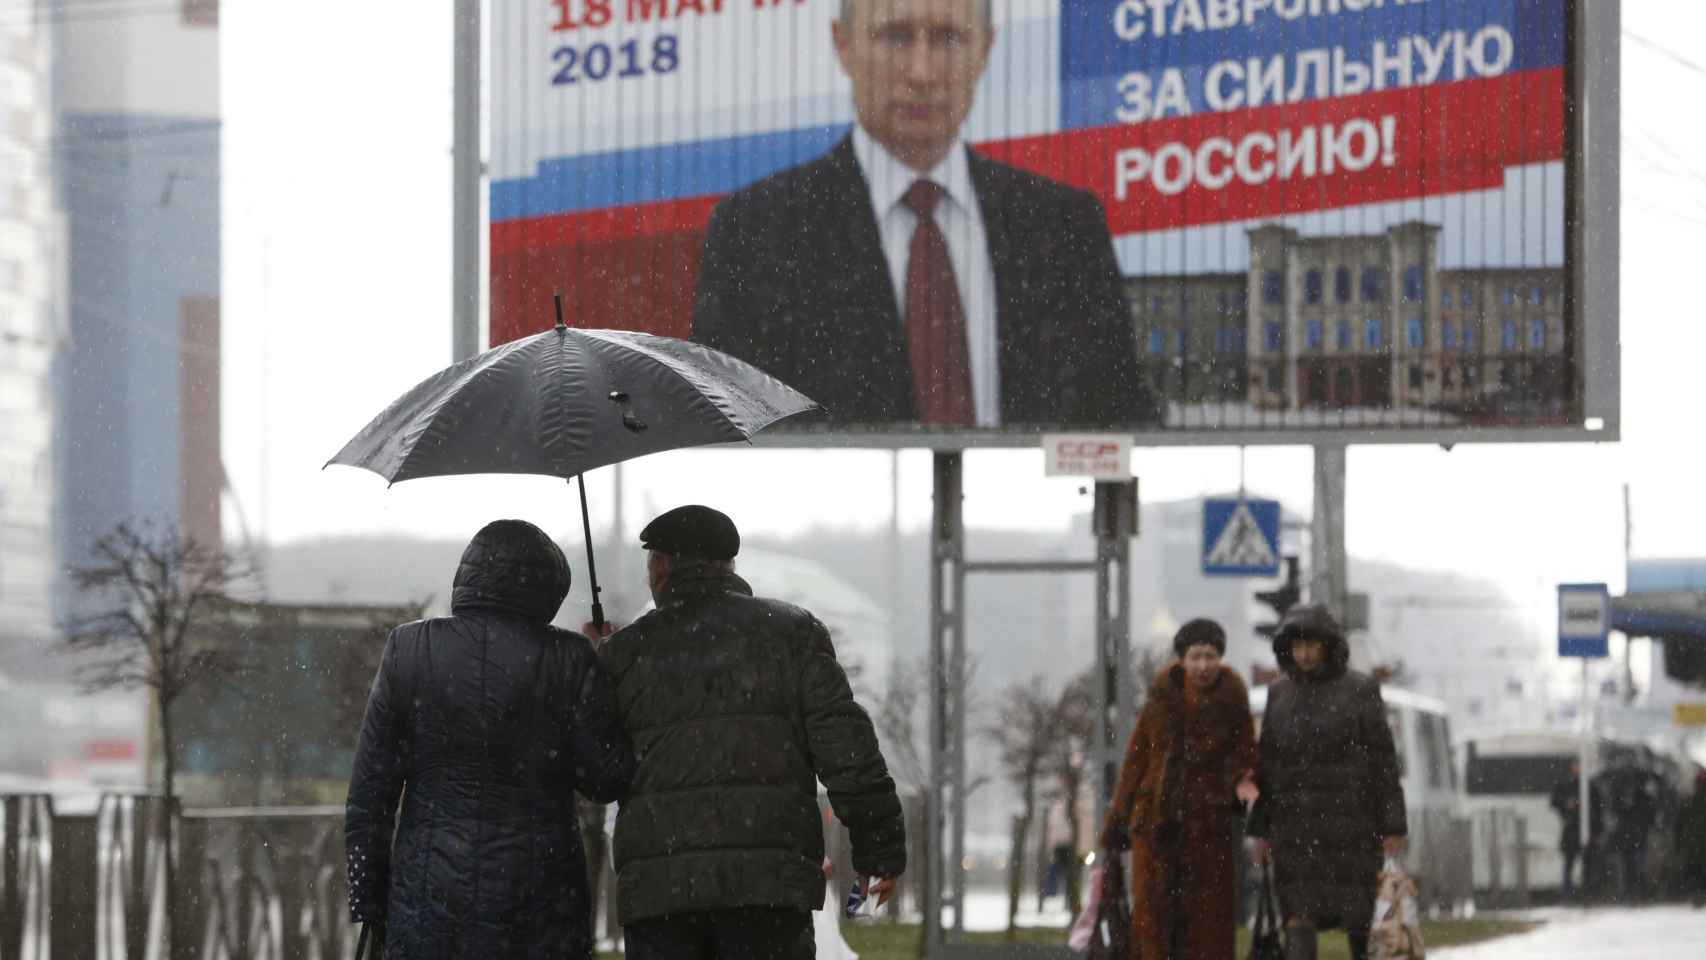 Cartel electoral de Putin en una calle de Moscú